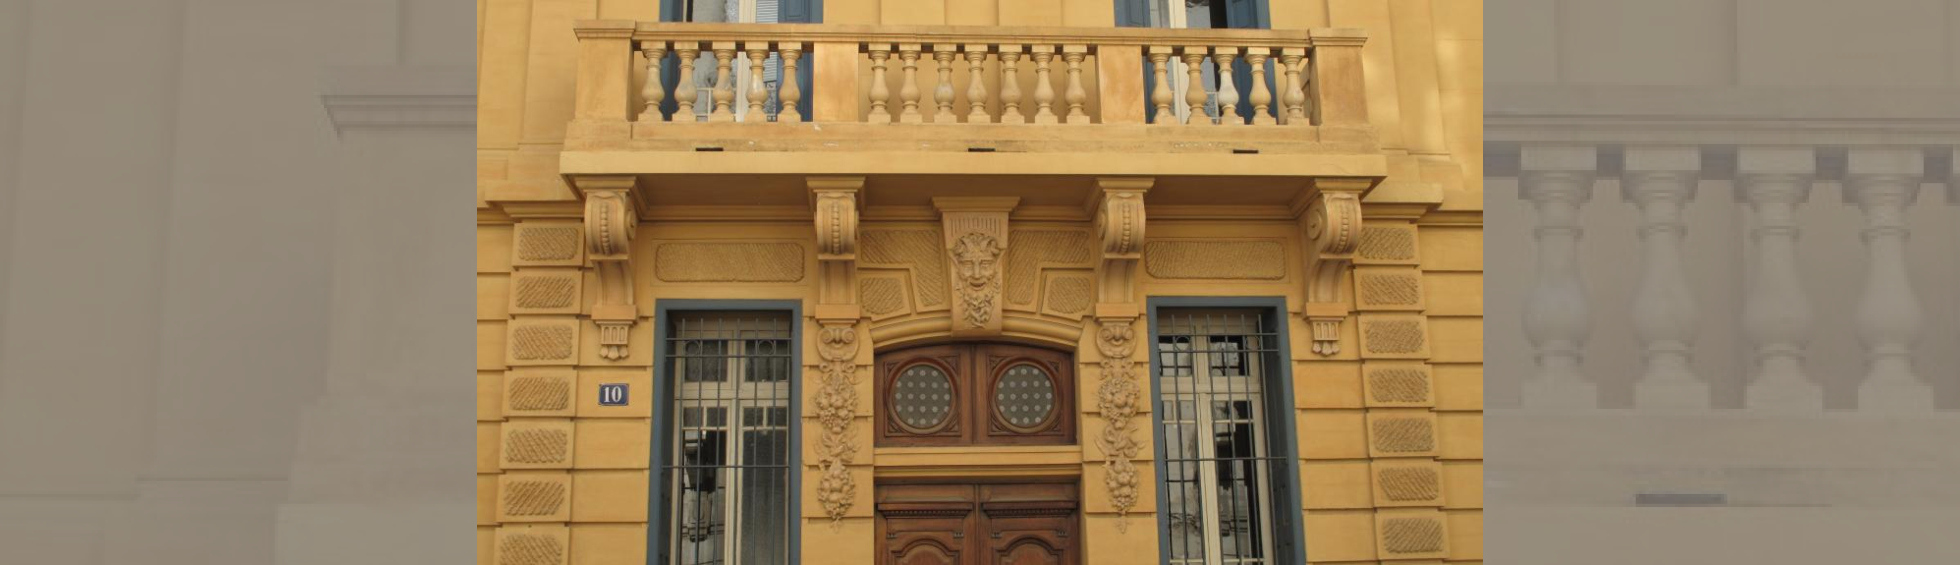 Façade peinte en ocre jaune ,balcon à balustres au 1er,guirlandes et tête de faune ornant les piedroits et linteau de l'entrée